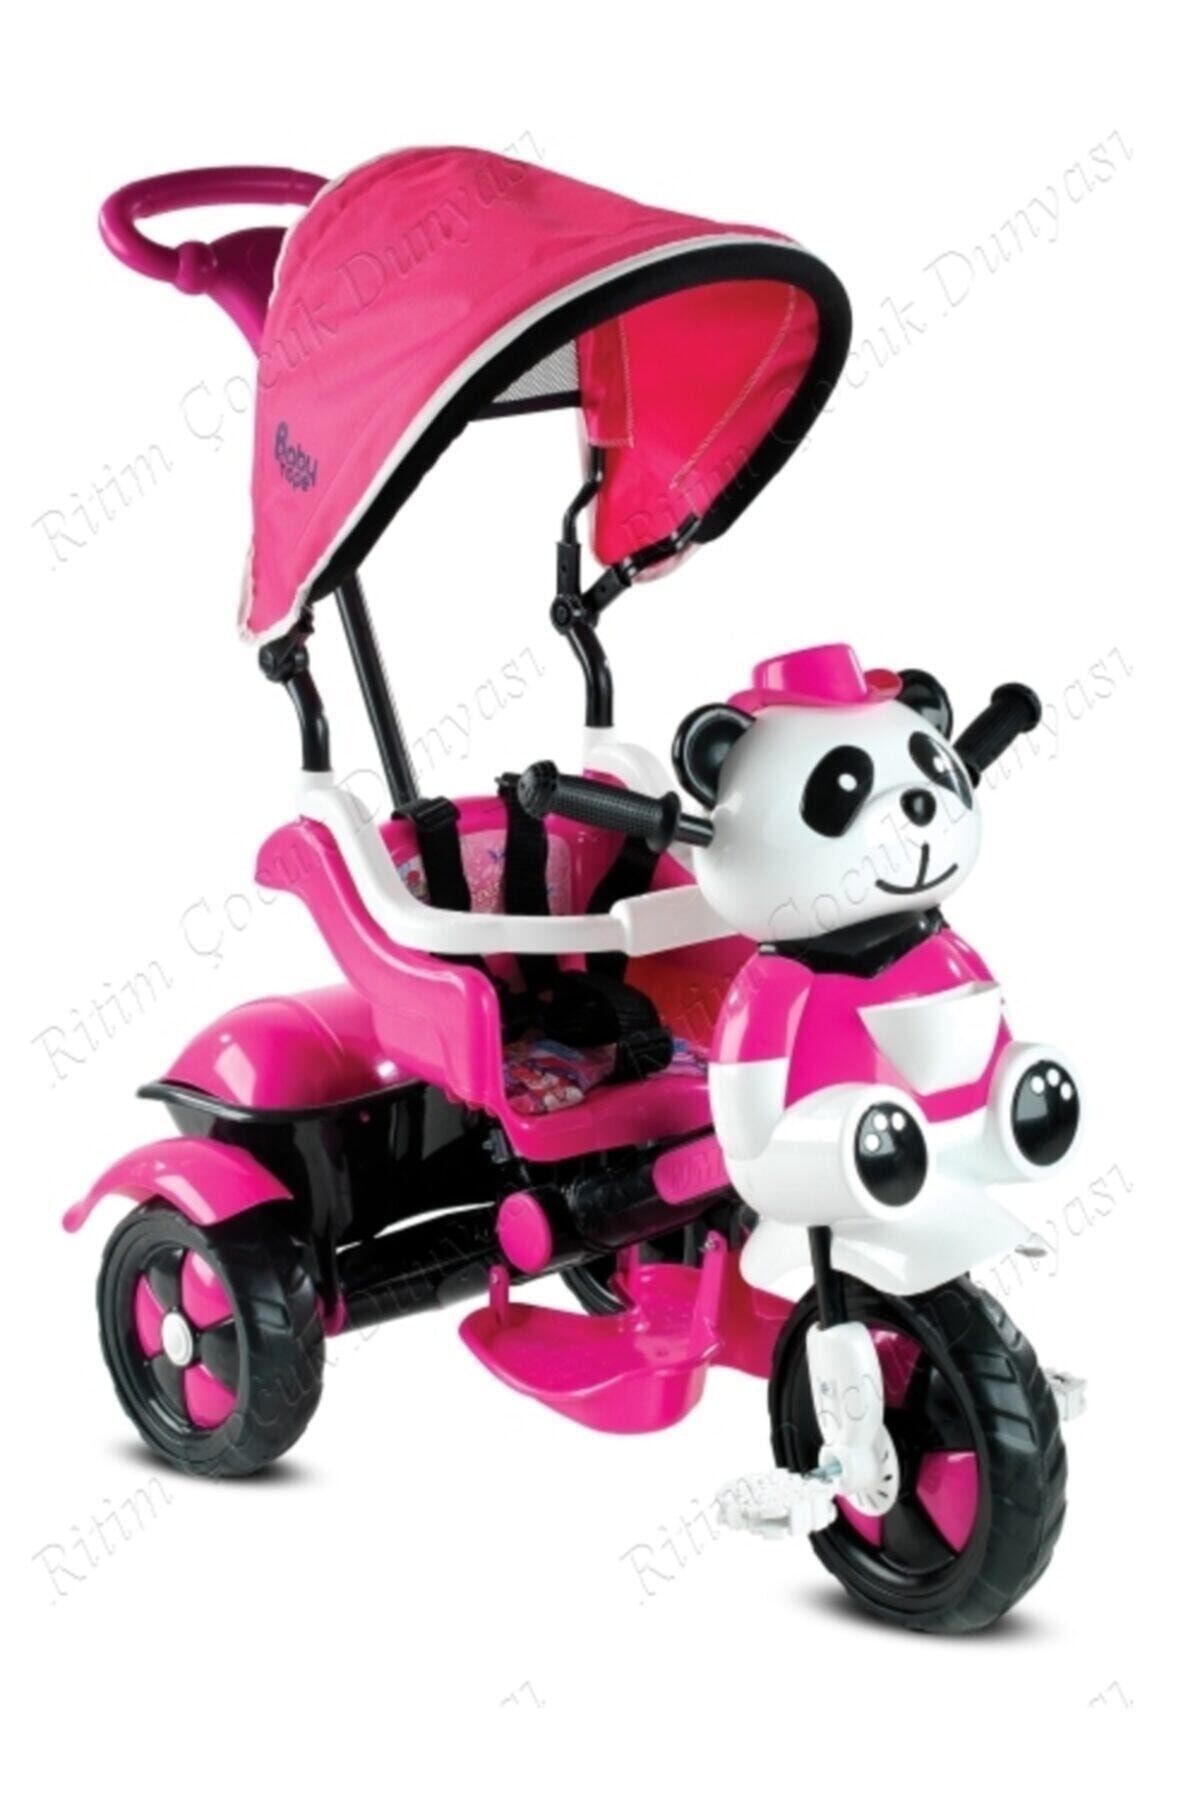 Babyhope 127 Panda Üçteker 1-2-3-4 Yaş Arası Kontrollü Kız Bebek Bisikleti - Pembe-siyah